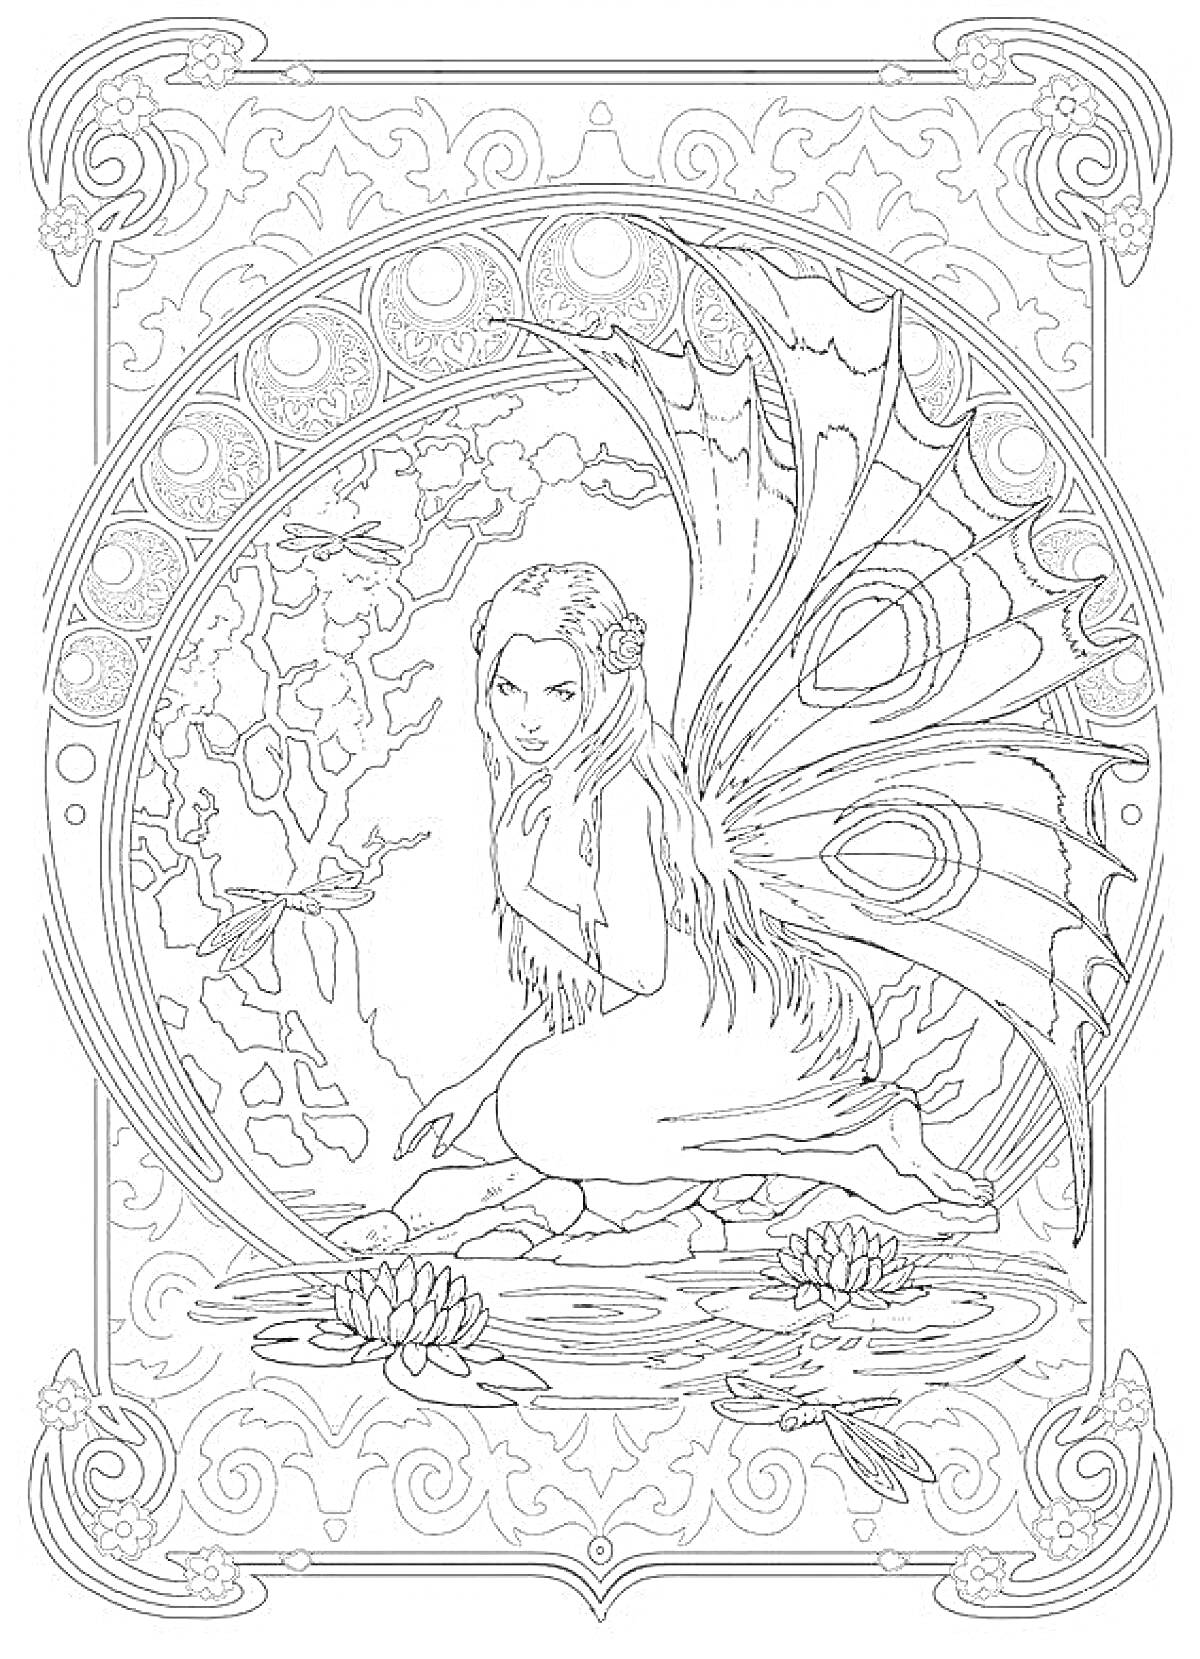 Раскраска Фея с крыльями на коленях у водоема с цветами и стрекозами в декоративной рамке